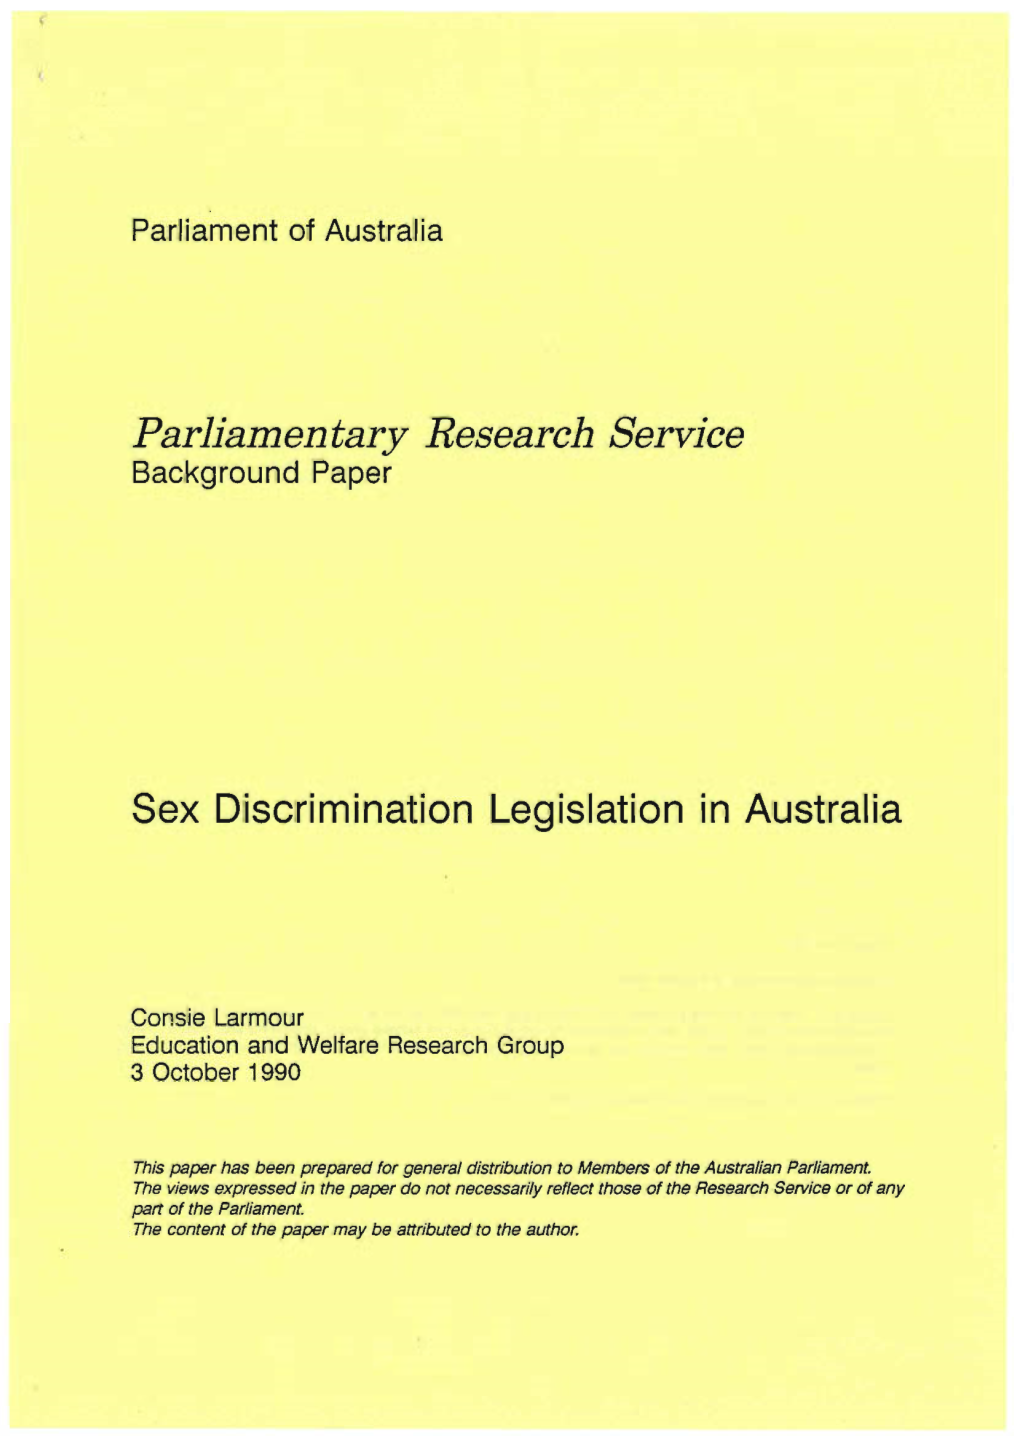 Sex Discrimination Legislation in Australia